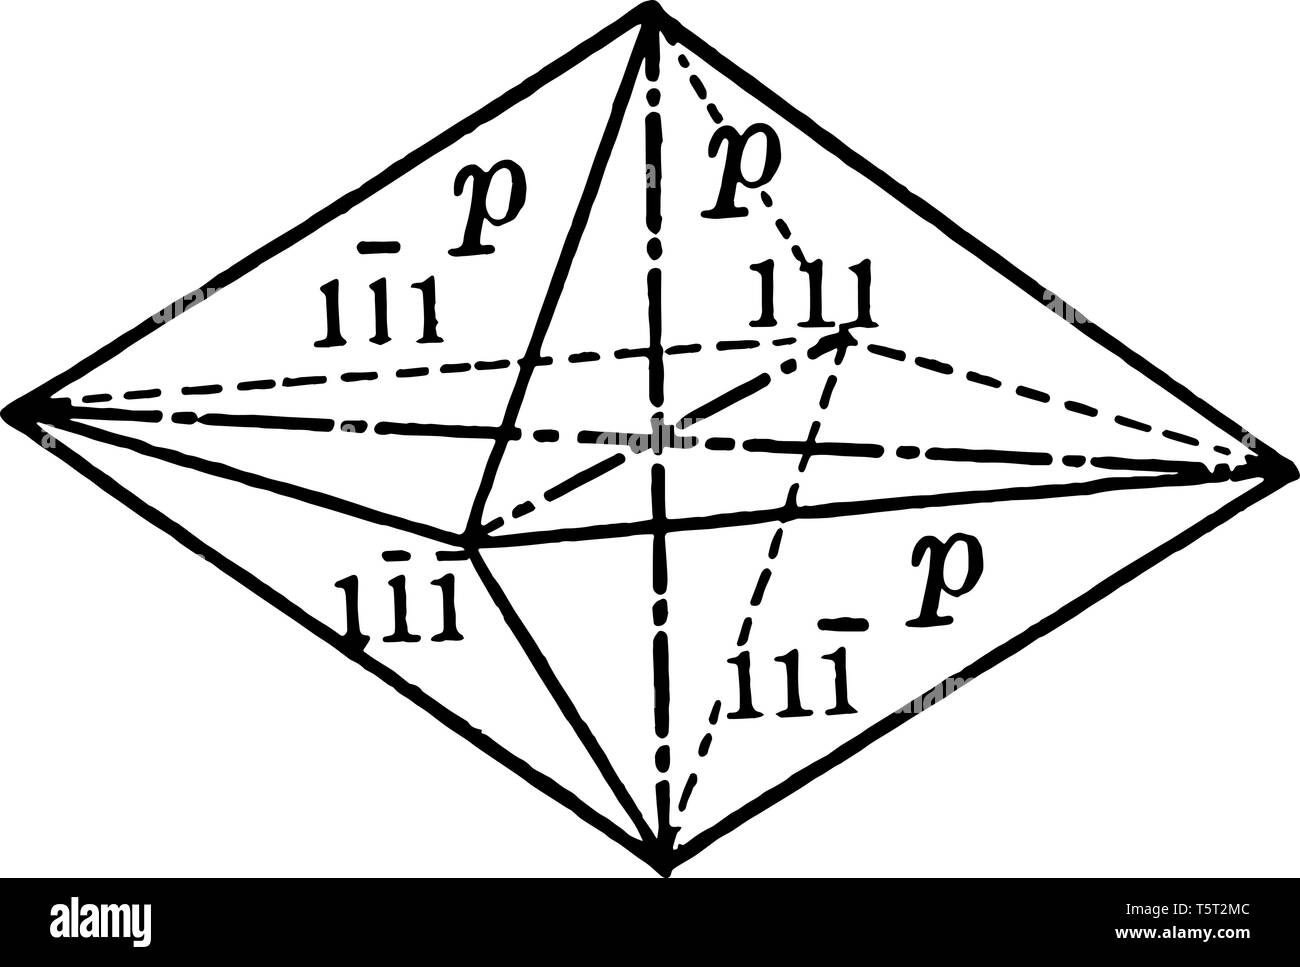 Die Pyramide ist ein erster Auftrag geben, in der es gibt acht gleichschenklig dreieckige Flächen, von denen jede erzeugt drei kristallographischen Achsen, vintage Lin Stock Vektor